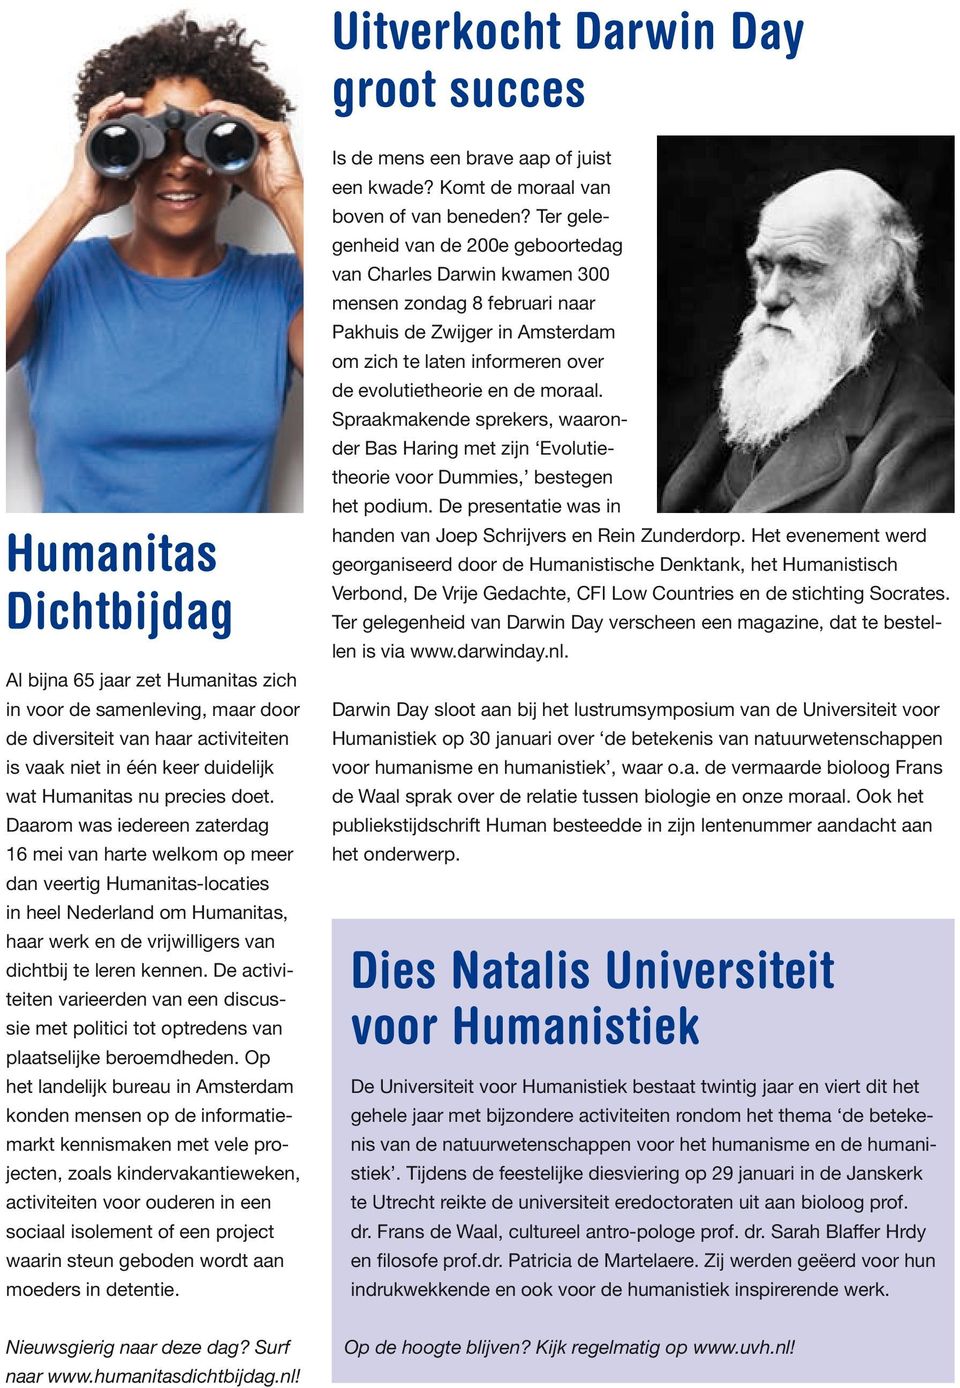 Daarom was iedereen zaterdag 16 mei van harte welkom op meer dan veertig Humanitas-locaties in heel Nederland om Humanitas, haar werk en de vrijwilligers van dichtbij te leren kennen.